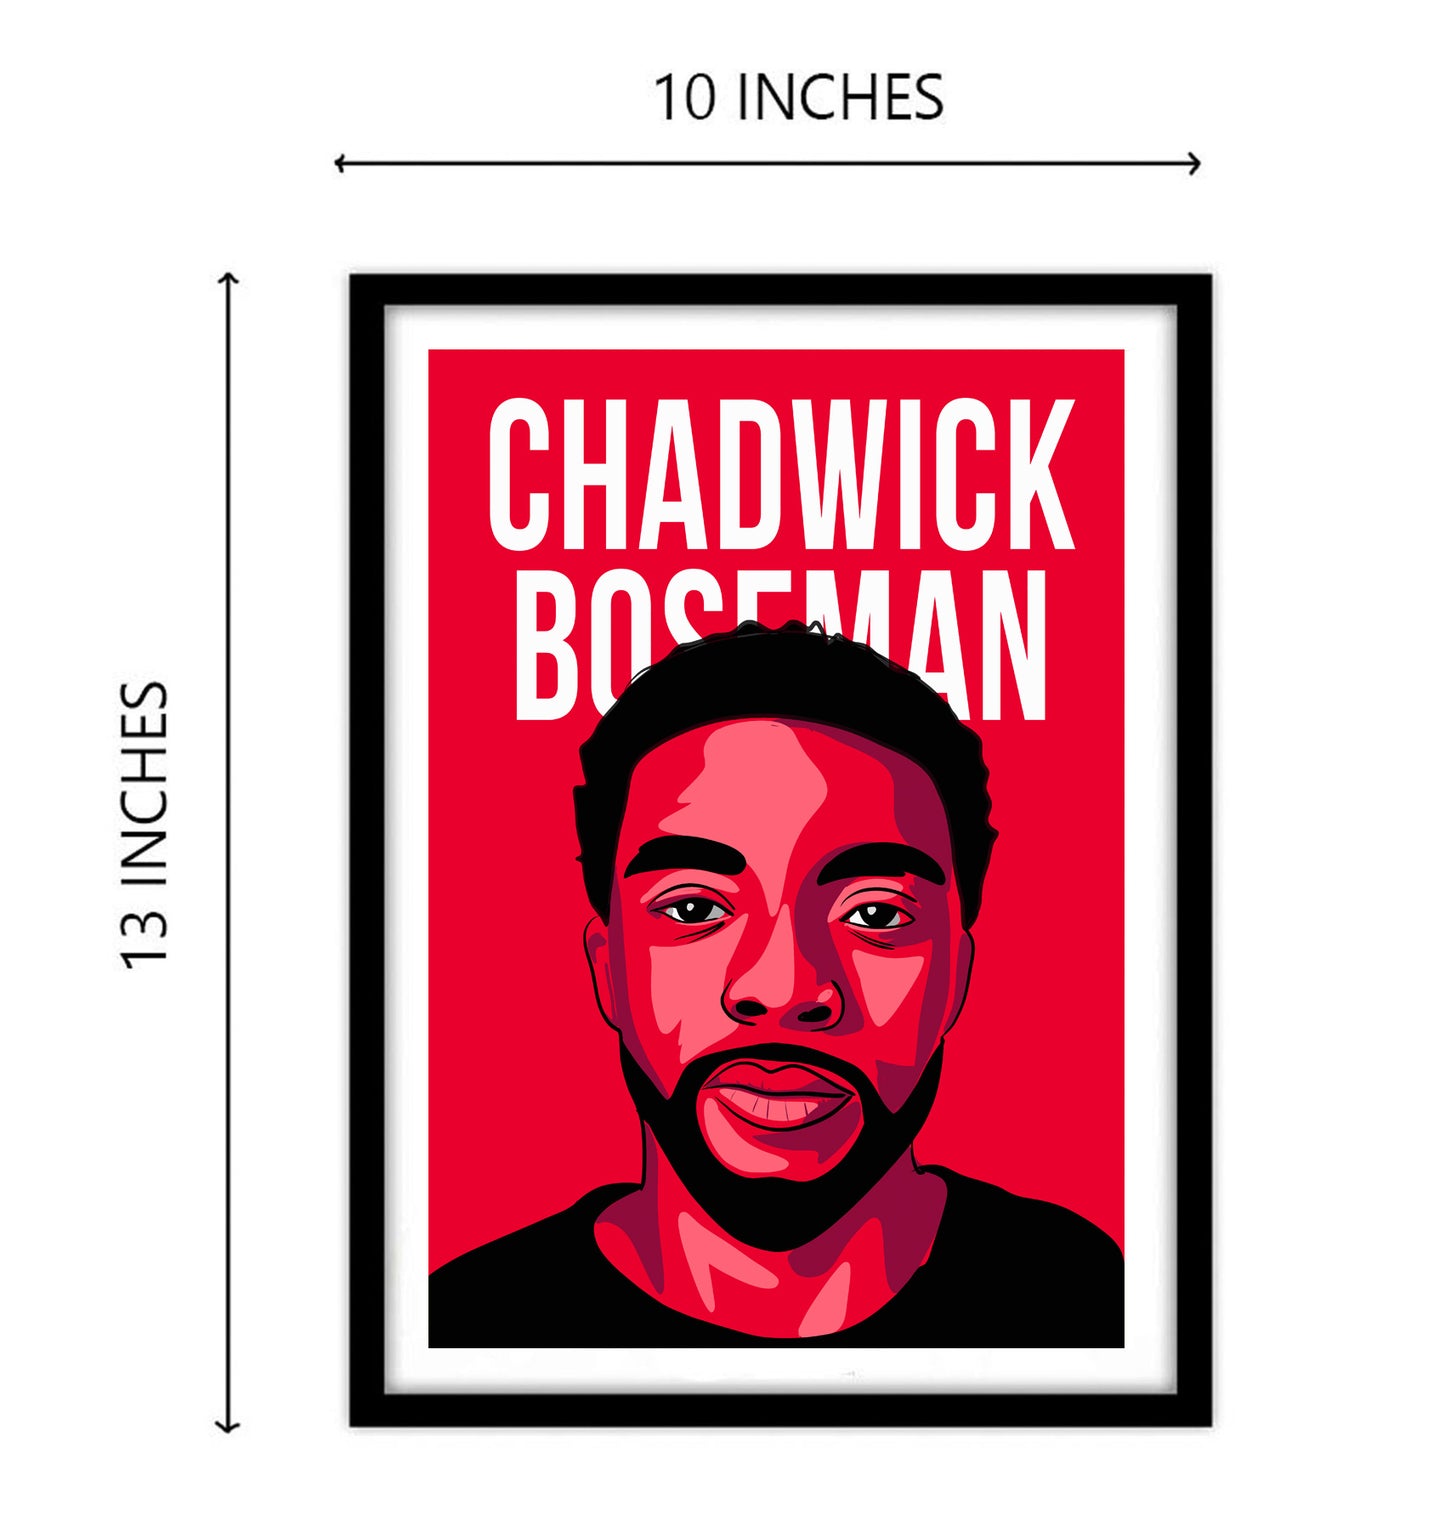 Chadwick Boseman Art work